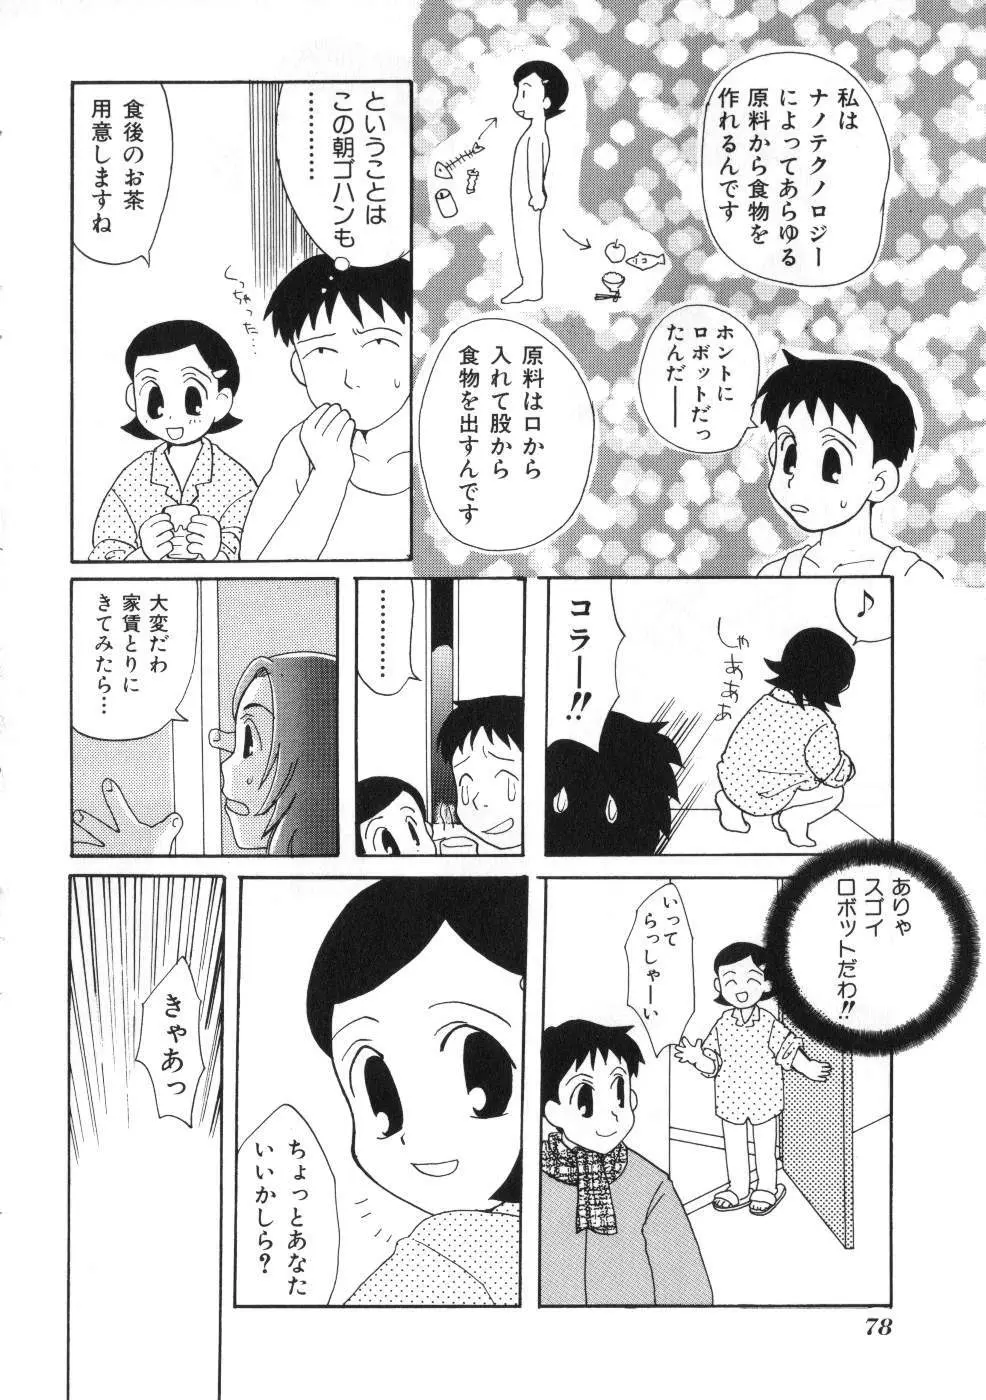 Miss ちゃいどる vol. 1 78ページ